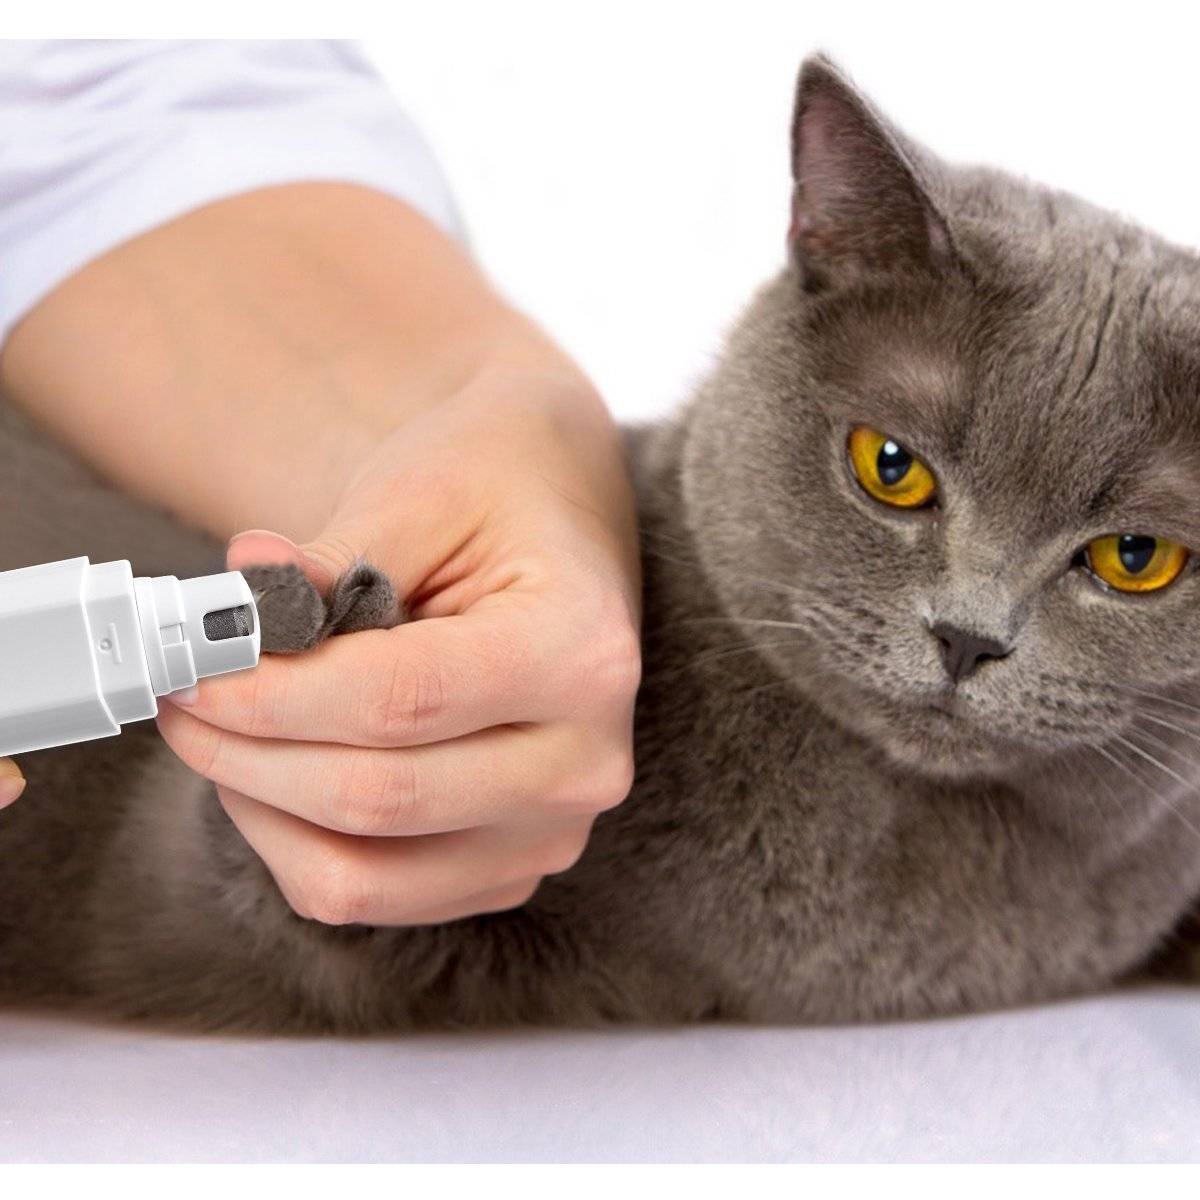 Как подстричь кошке когти: полезные рекомендации по уходу